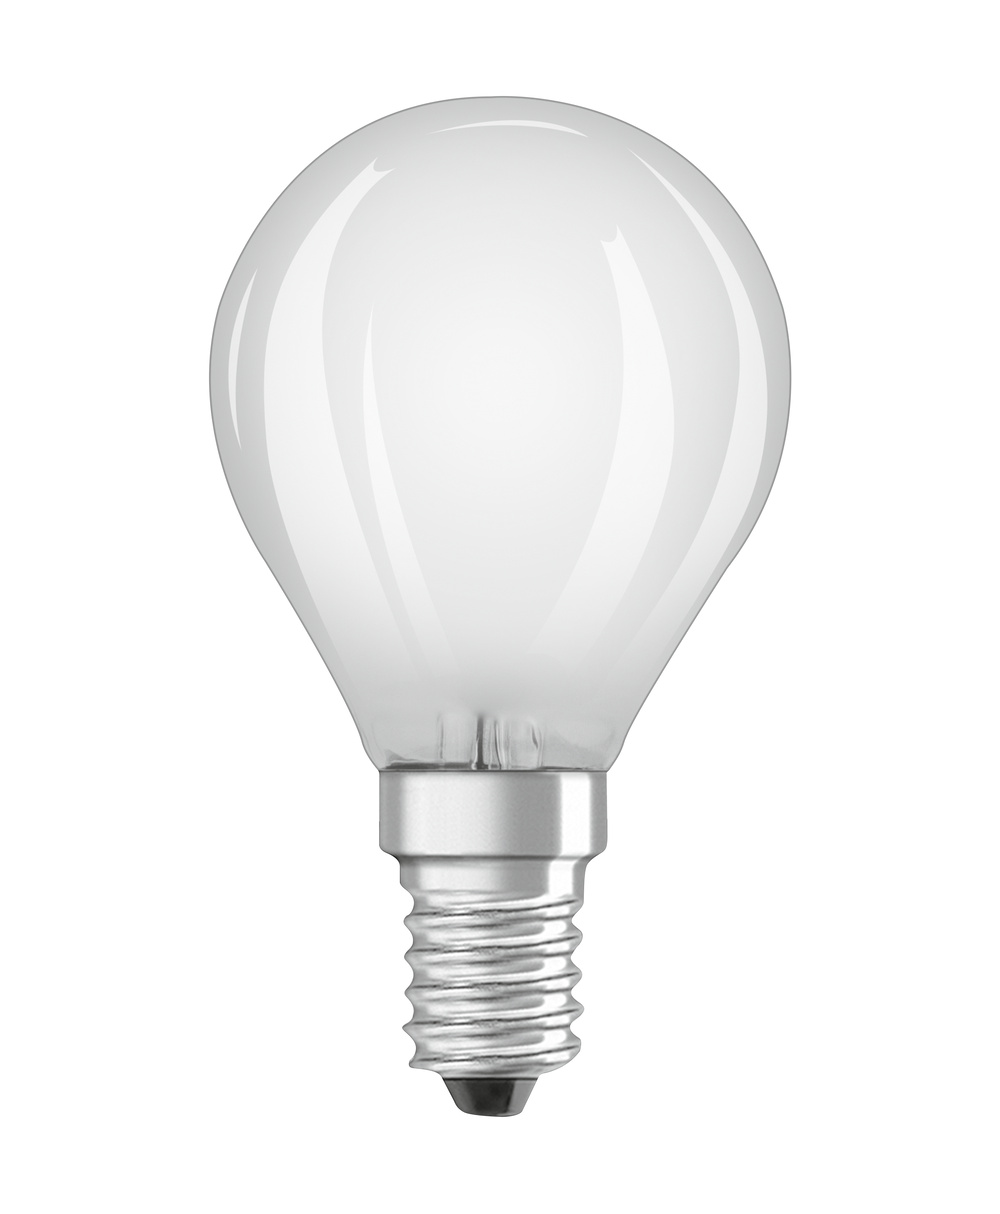 Ledvance LED lamp PARATHOM CLASSIC P 40 FR 4 W/2700 K E14  - 4099854069154